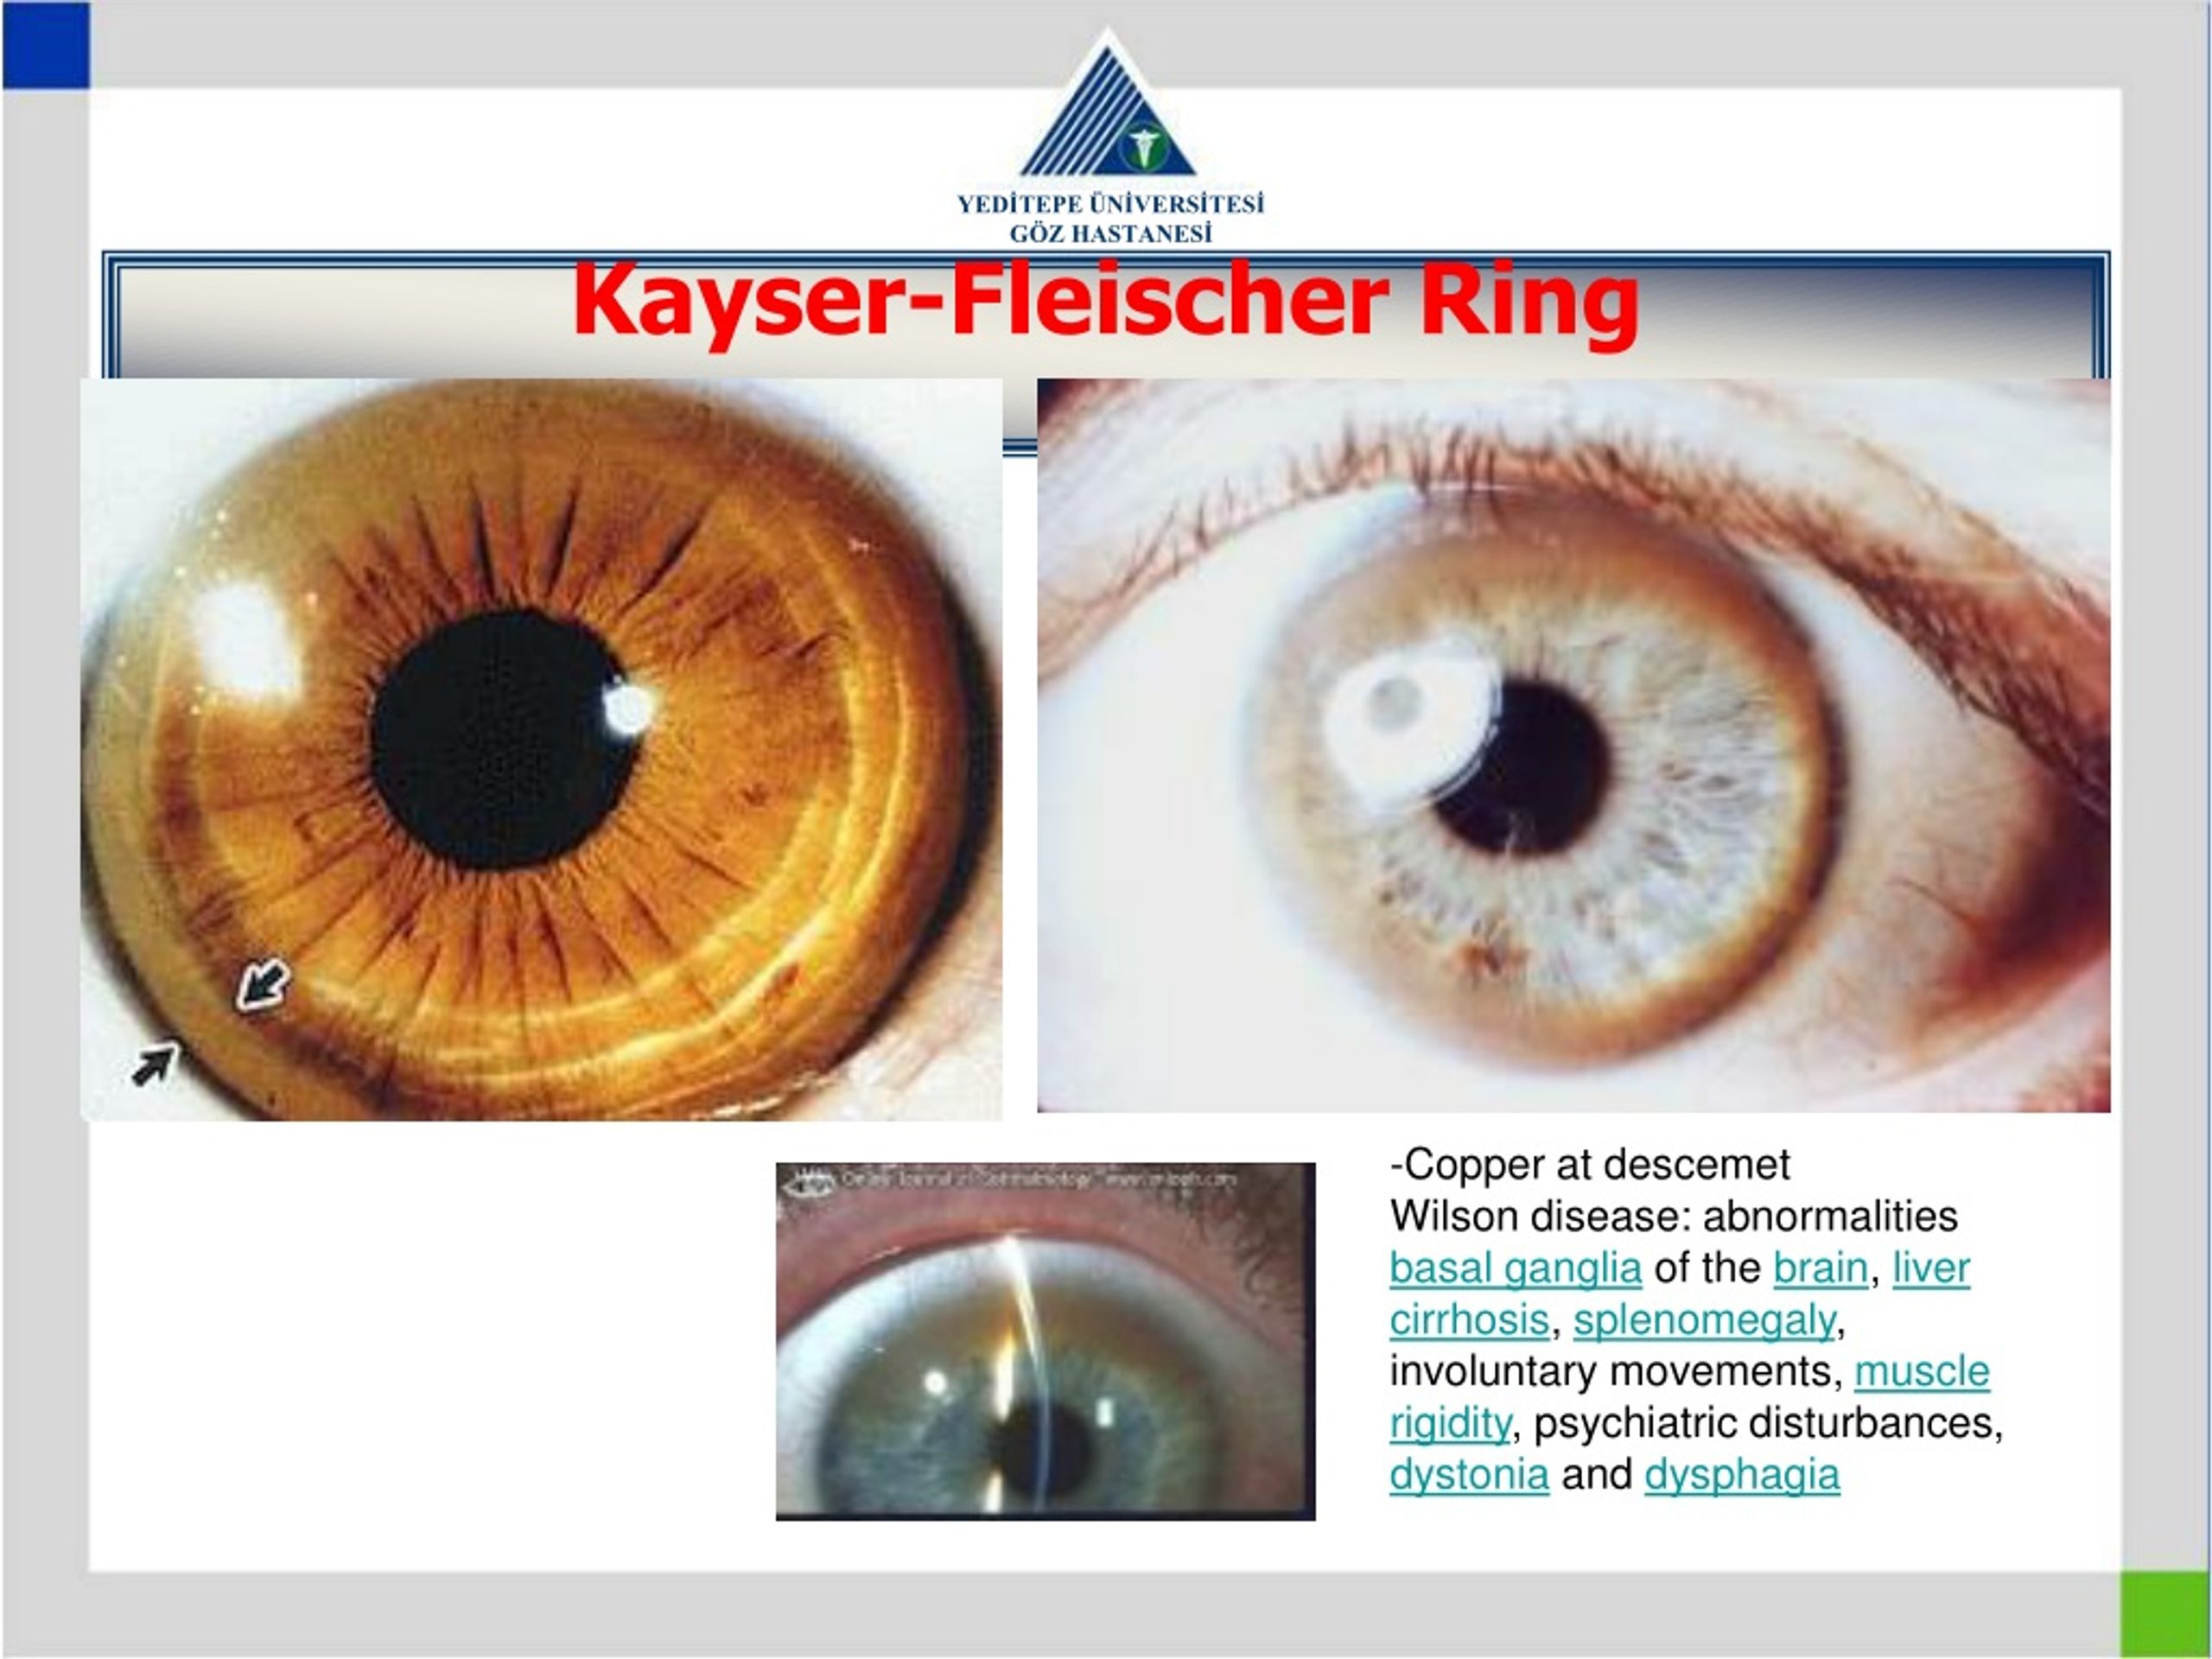 Kayser-Fleischer ring in eye due to … – Bild kaufen – 12969887 ❘ Science  Photo Library